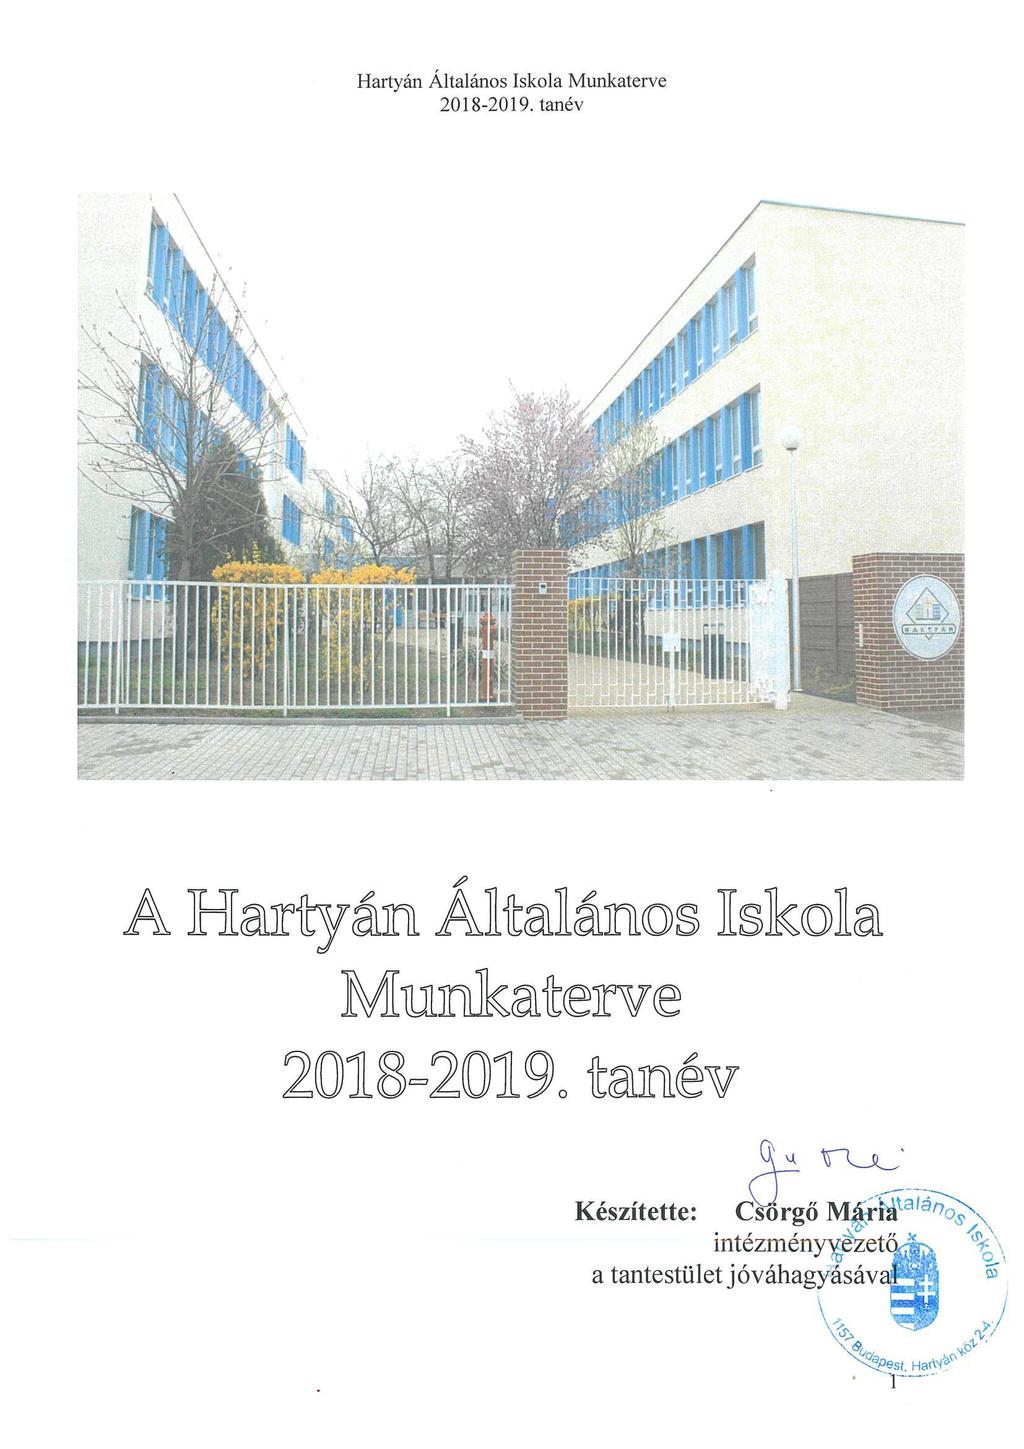 Hartyán Általános Iskola Munkaterve tanév - PDF Free Download